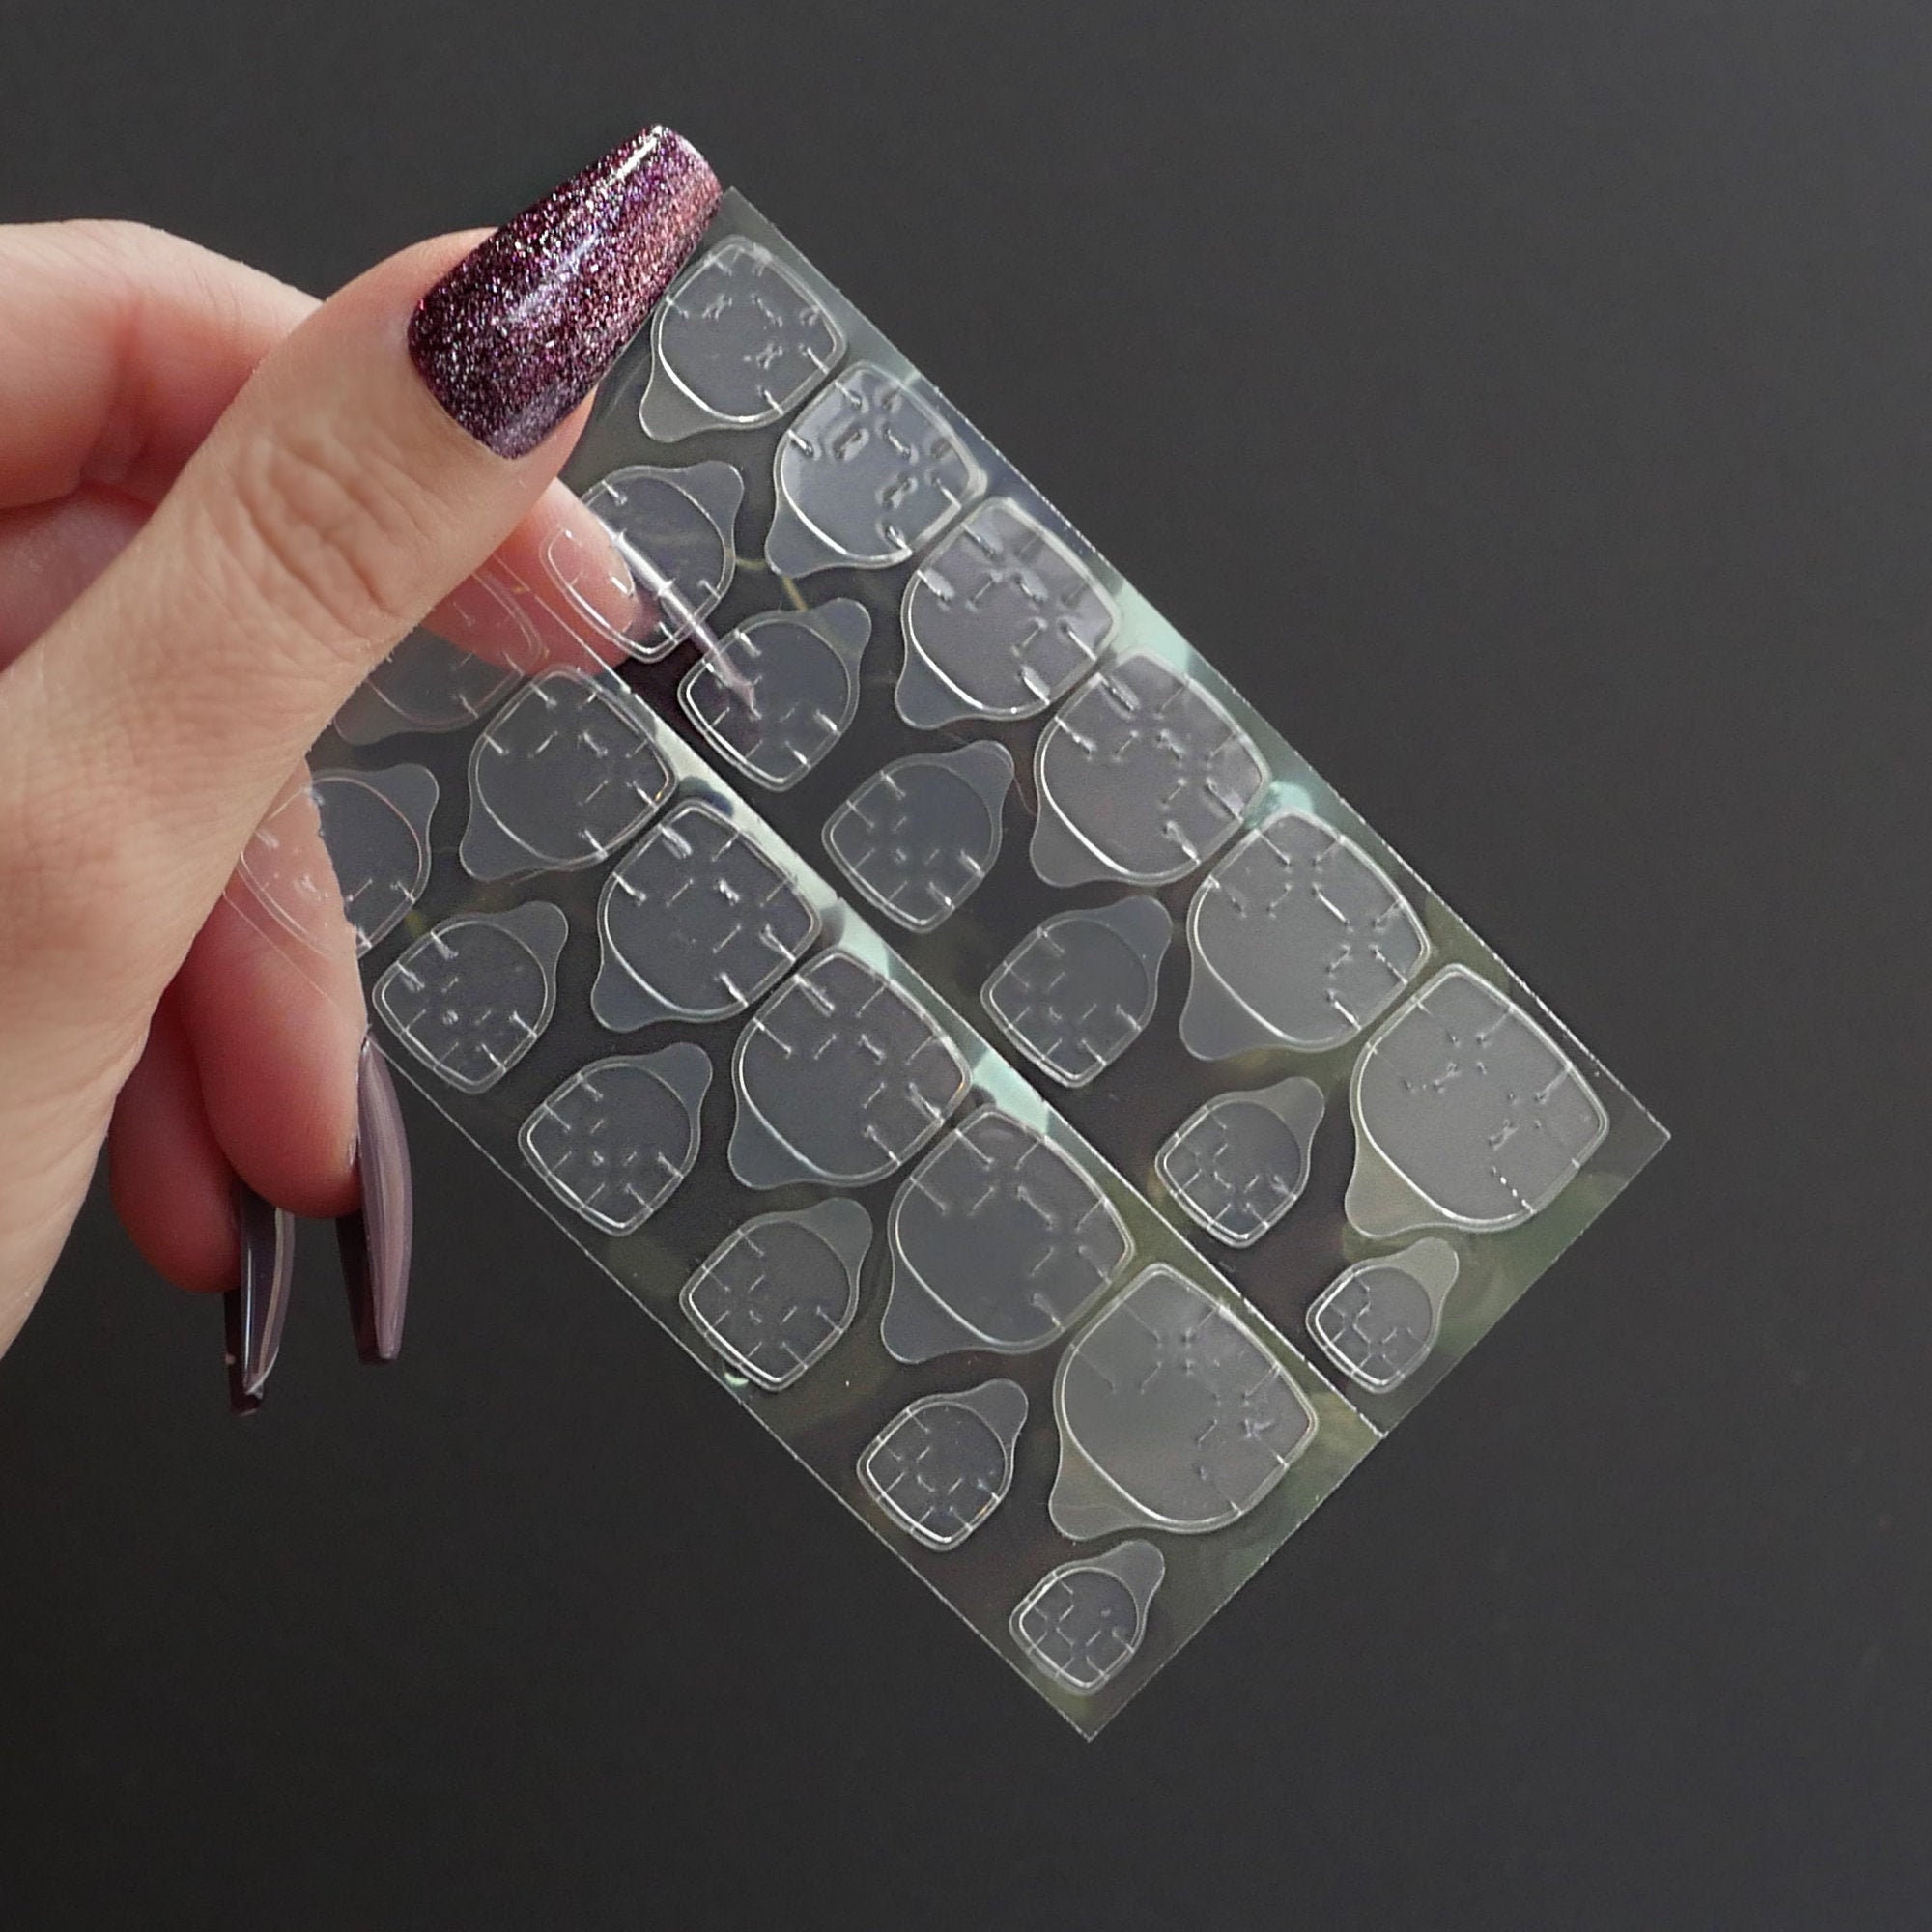 24 Adhesive Tabs for Press on Nails - Lilium Nails